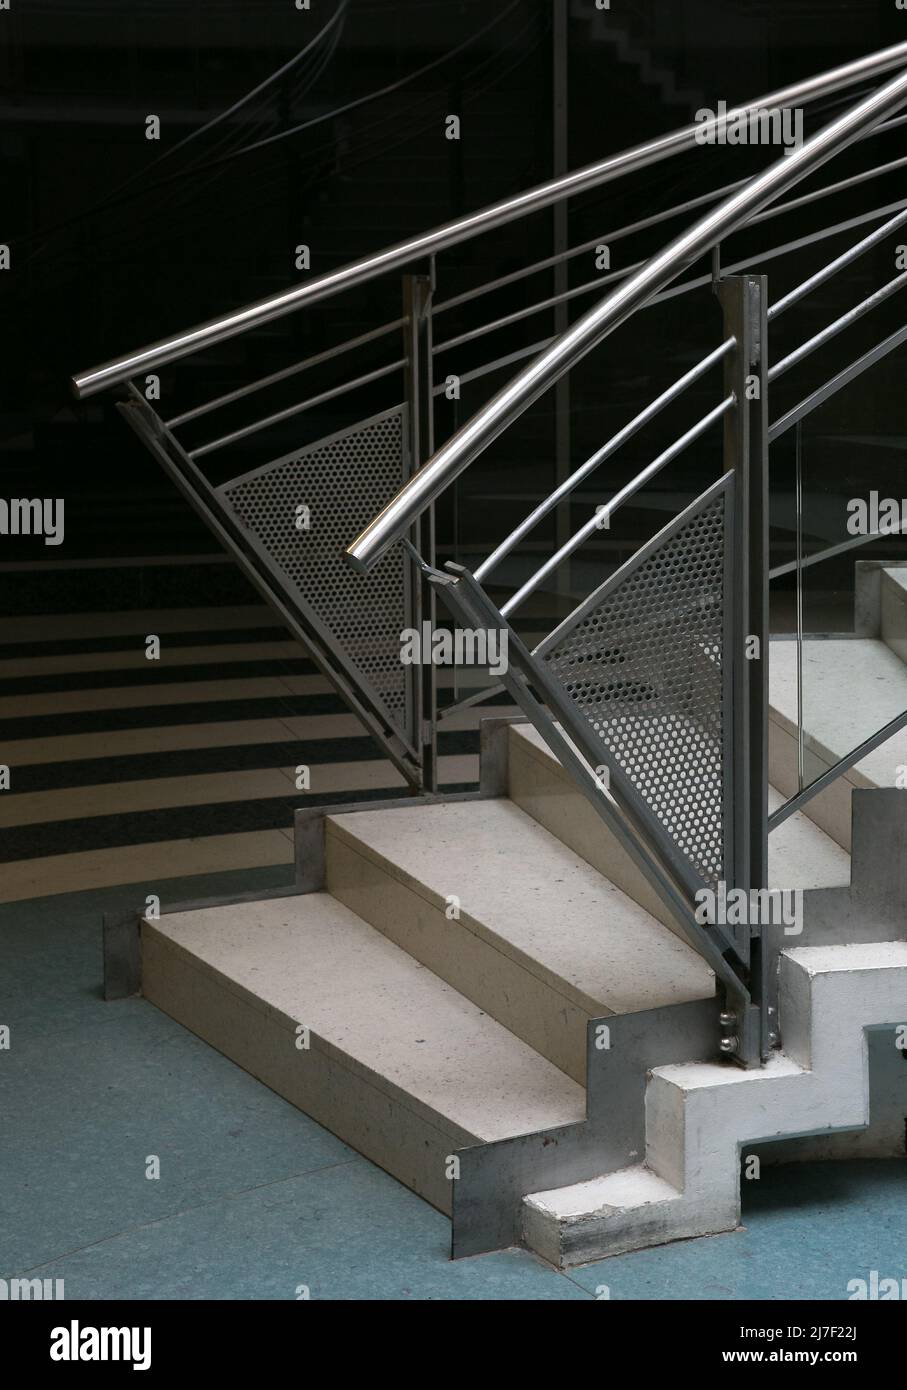 Halle S Charlotten-Centre 2802 Einkaufszentrum der frühen 1990er Jahre mit für diese Zeit typischem Treppenabgang Foto Stock